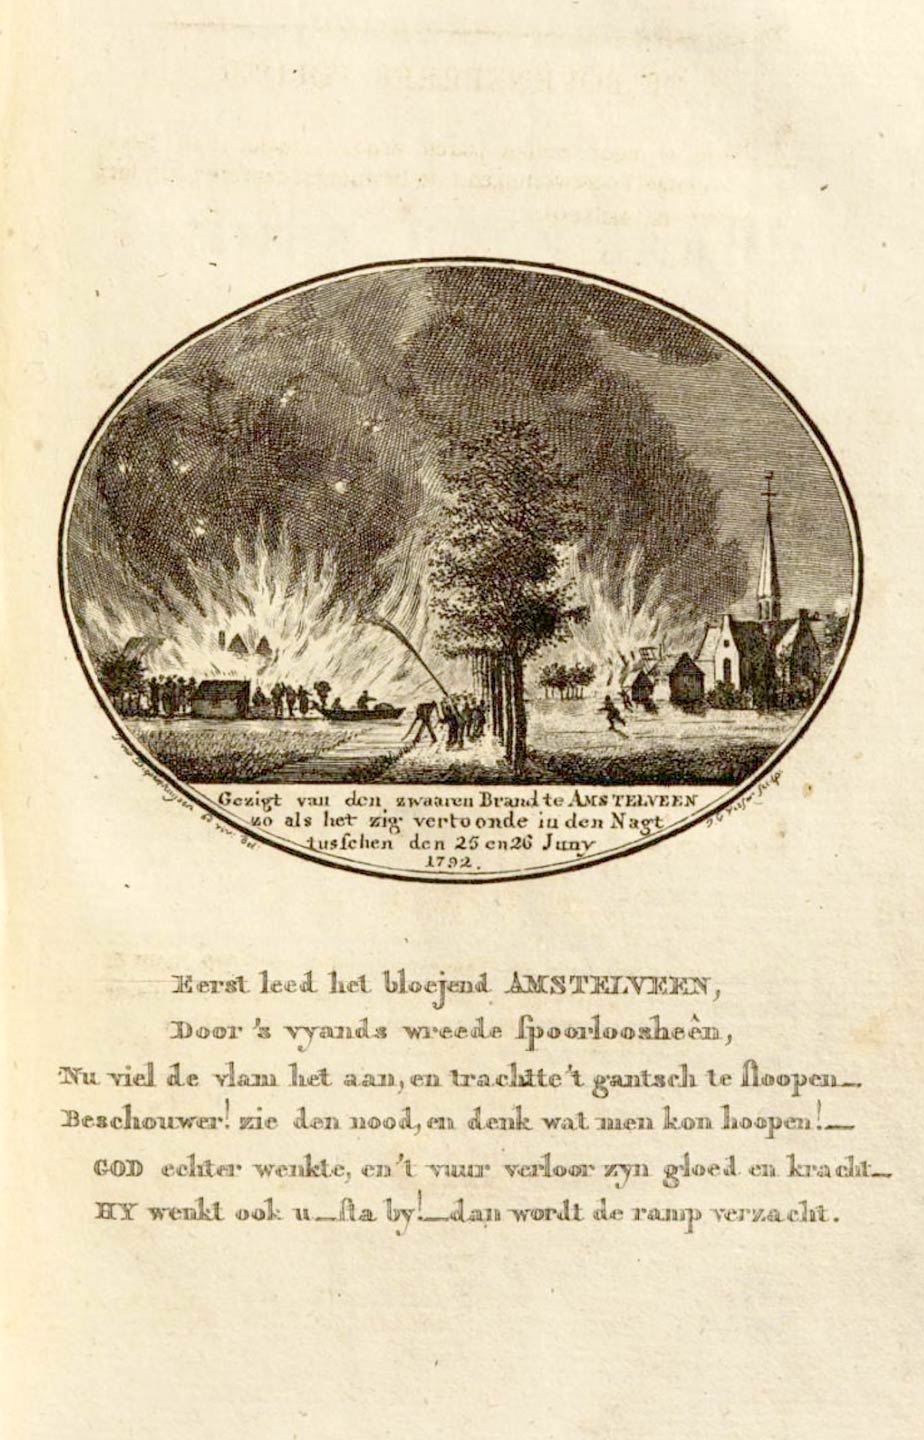 Gezigt van den zwaaren Brand te Amstelveen zo als het zig vertoonde in den Nagt tussen den 25 en 26 Jny 1792.